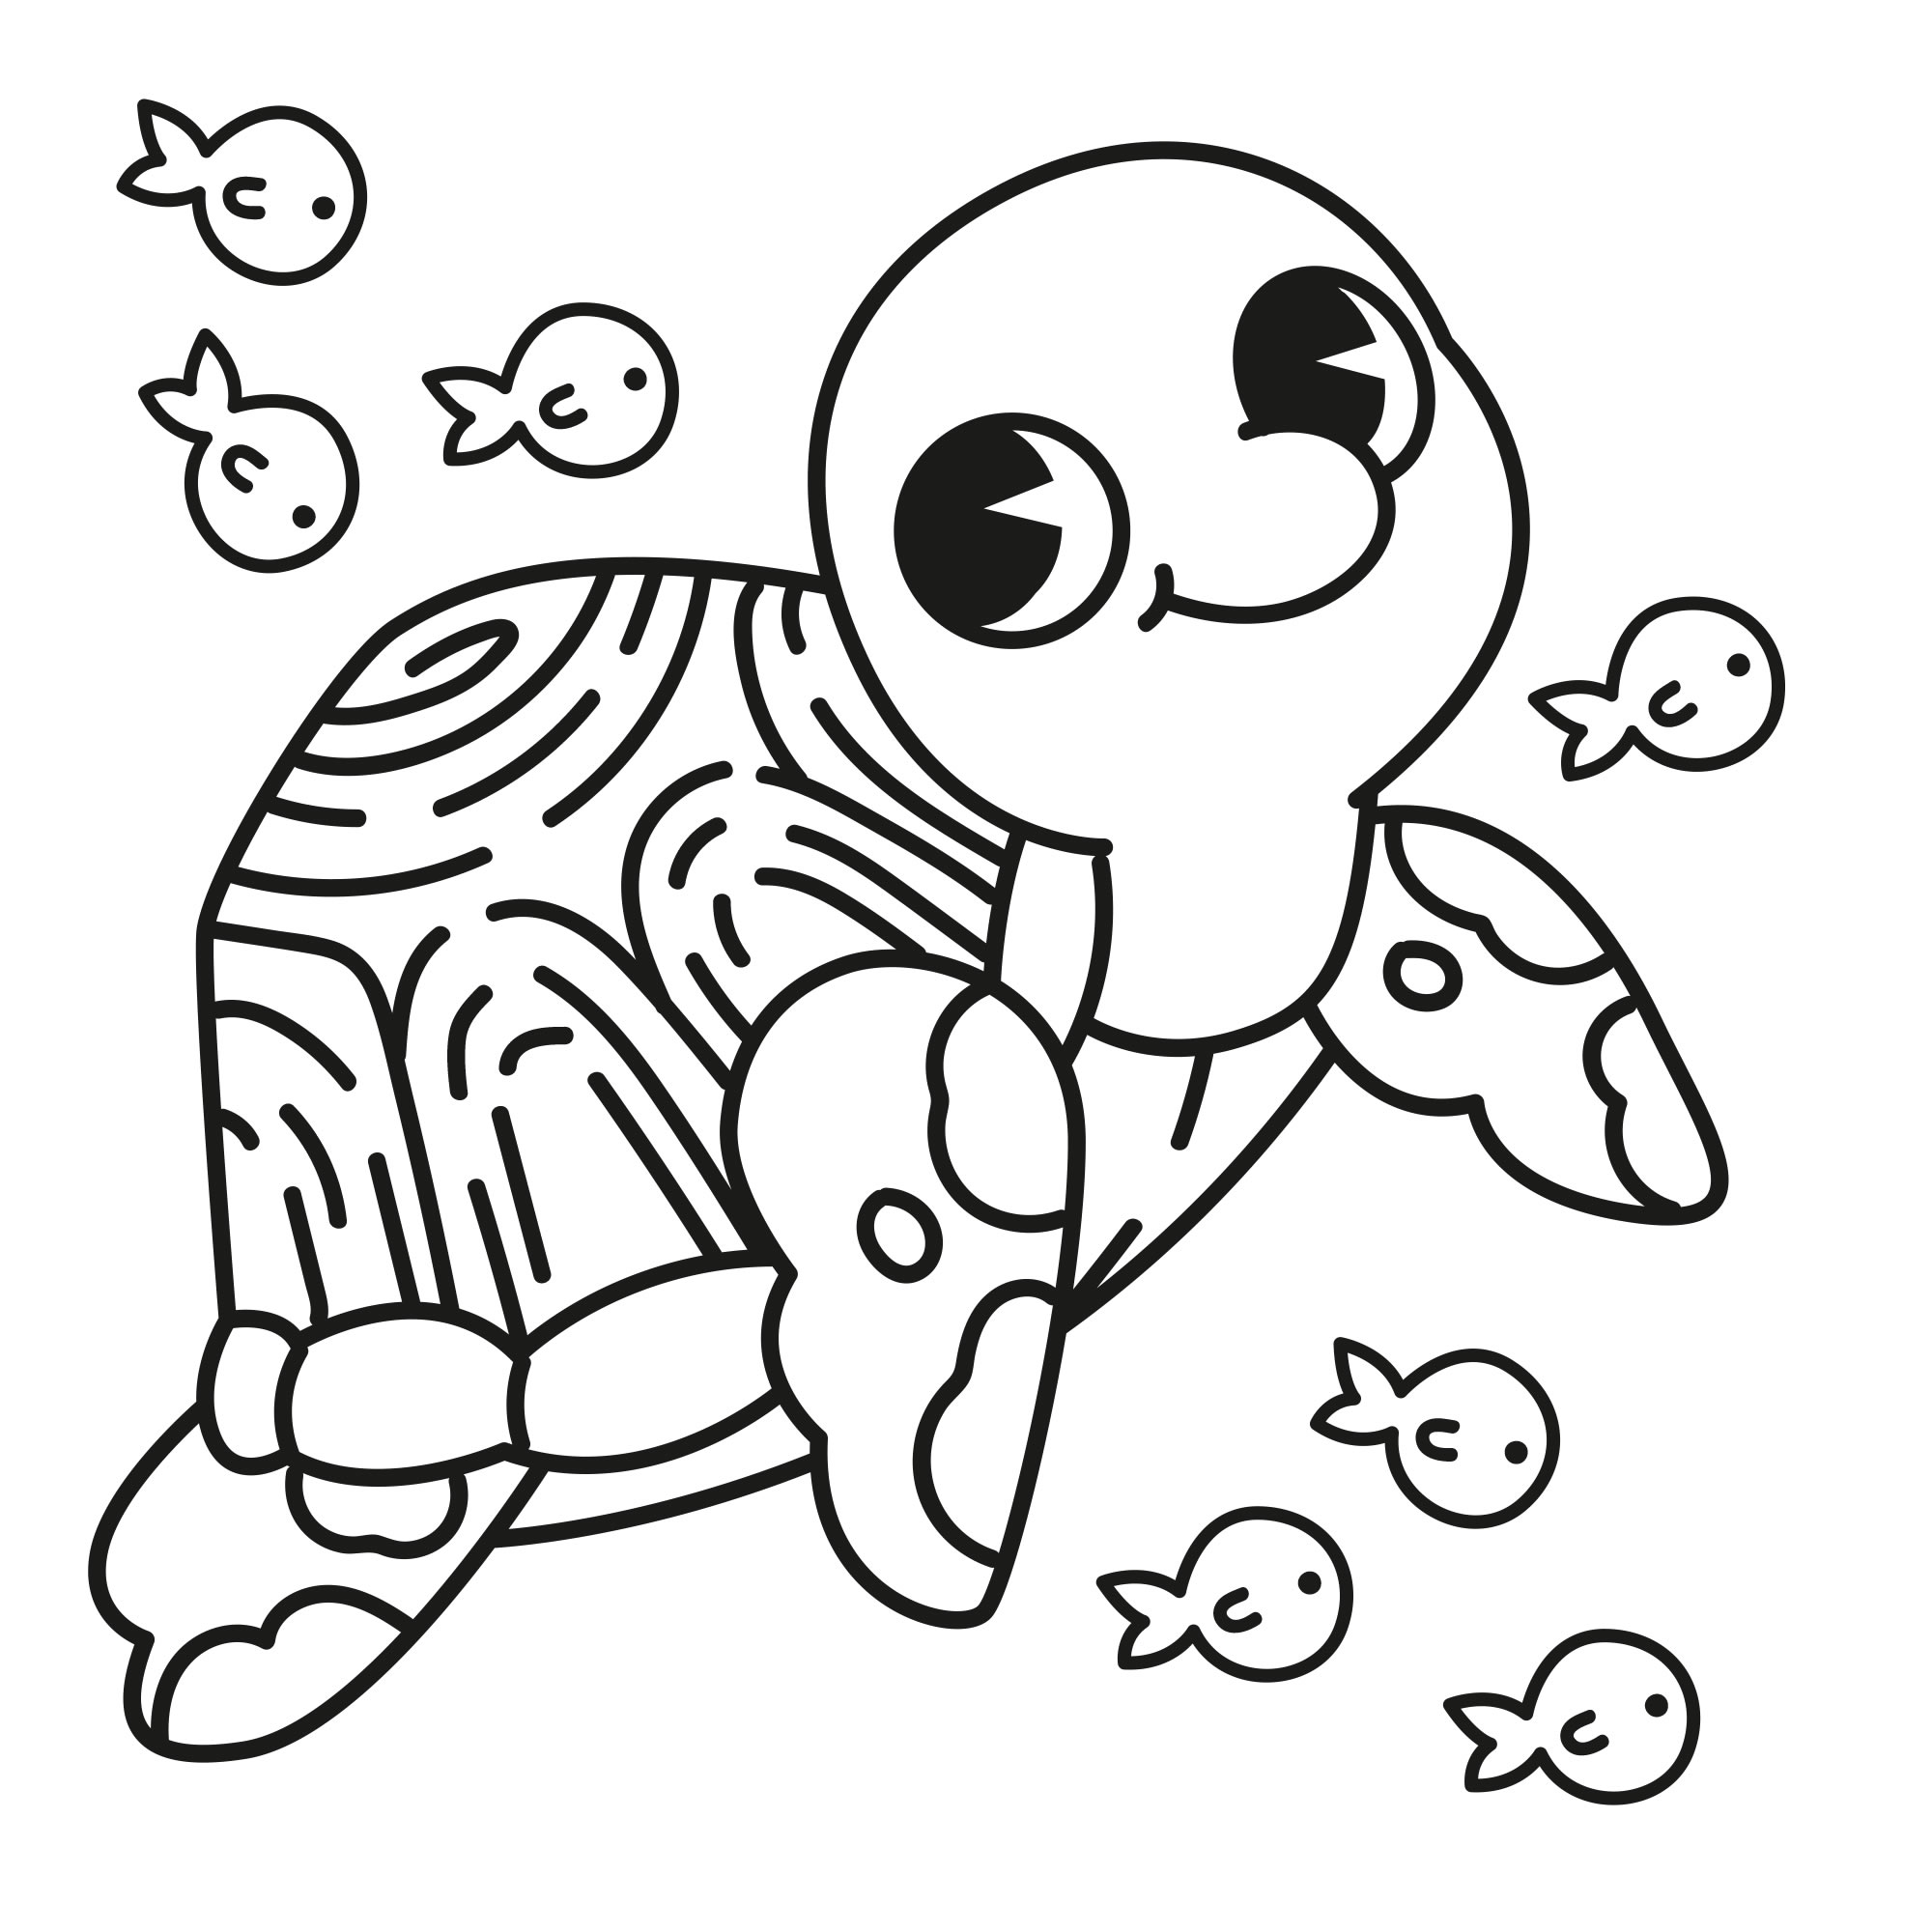 Бархатные раскраски Черепахи от DJECO за руб. Купить в официальном магазине DJECO